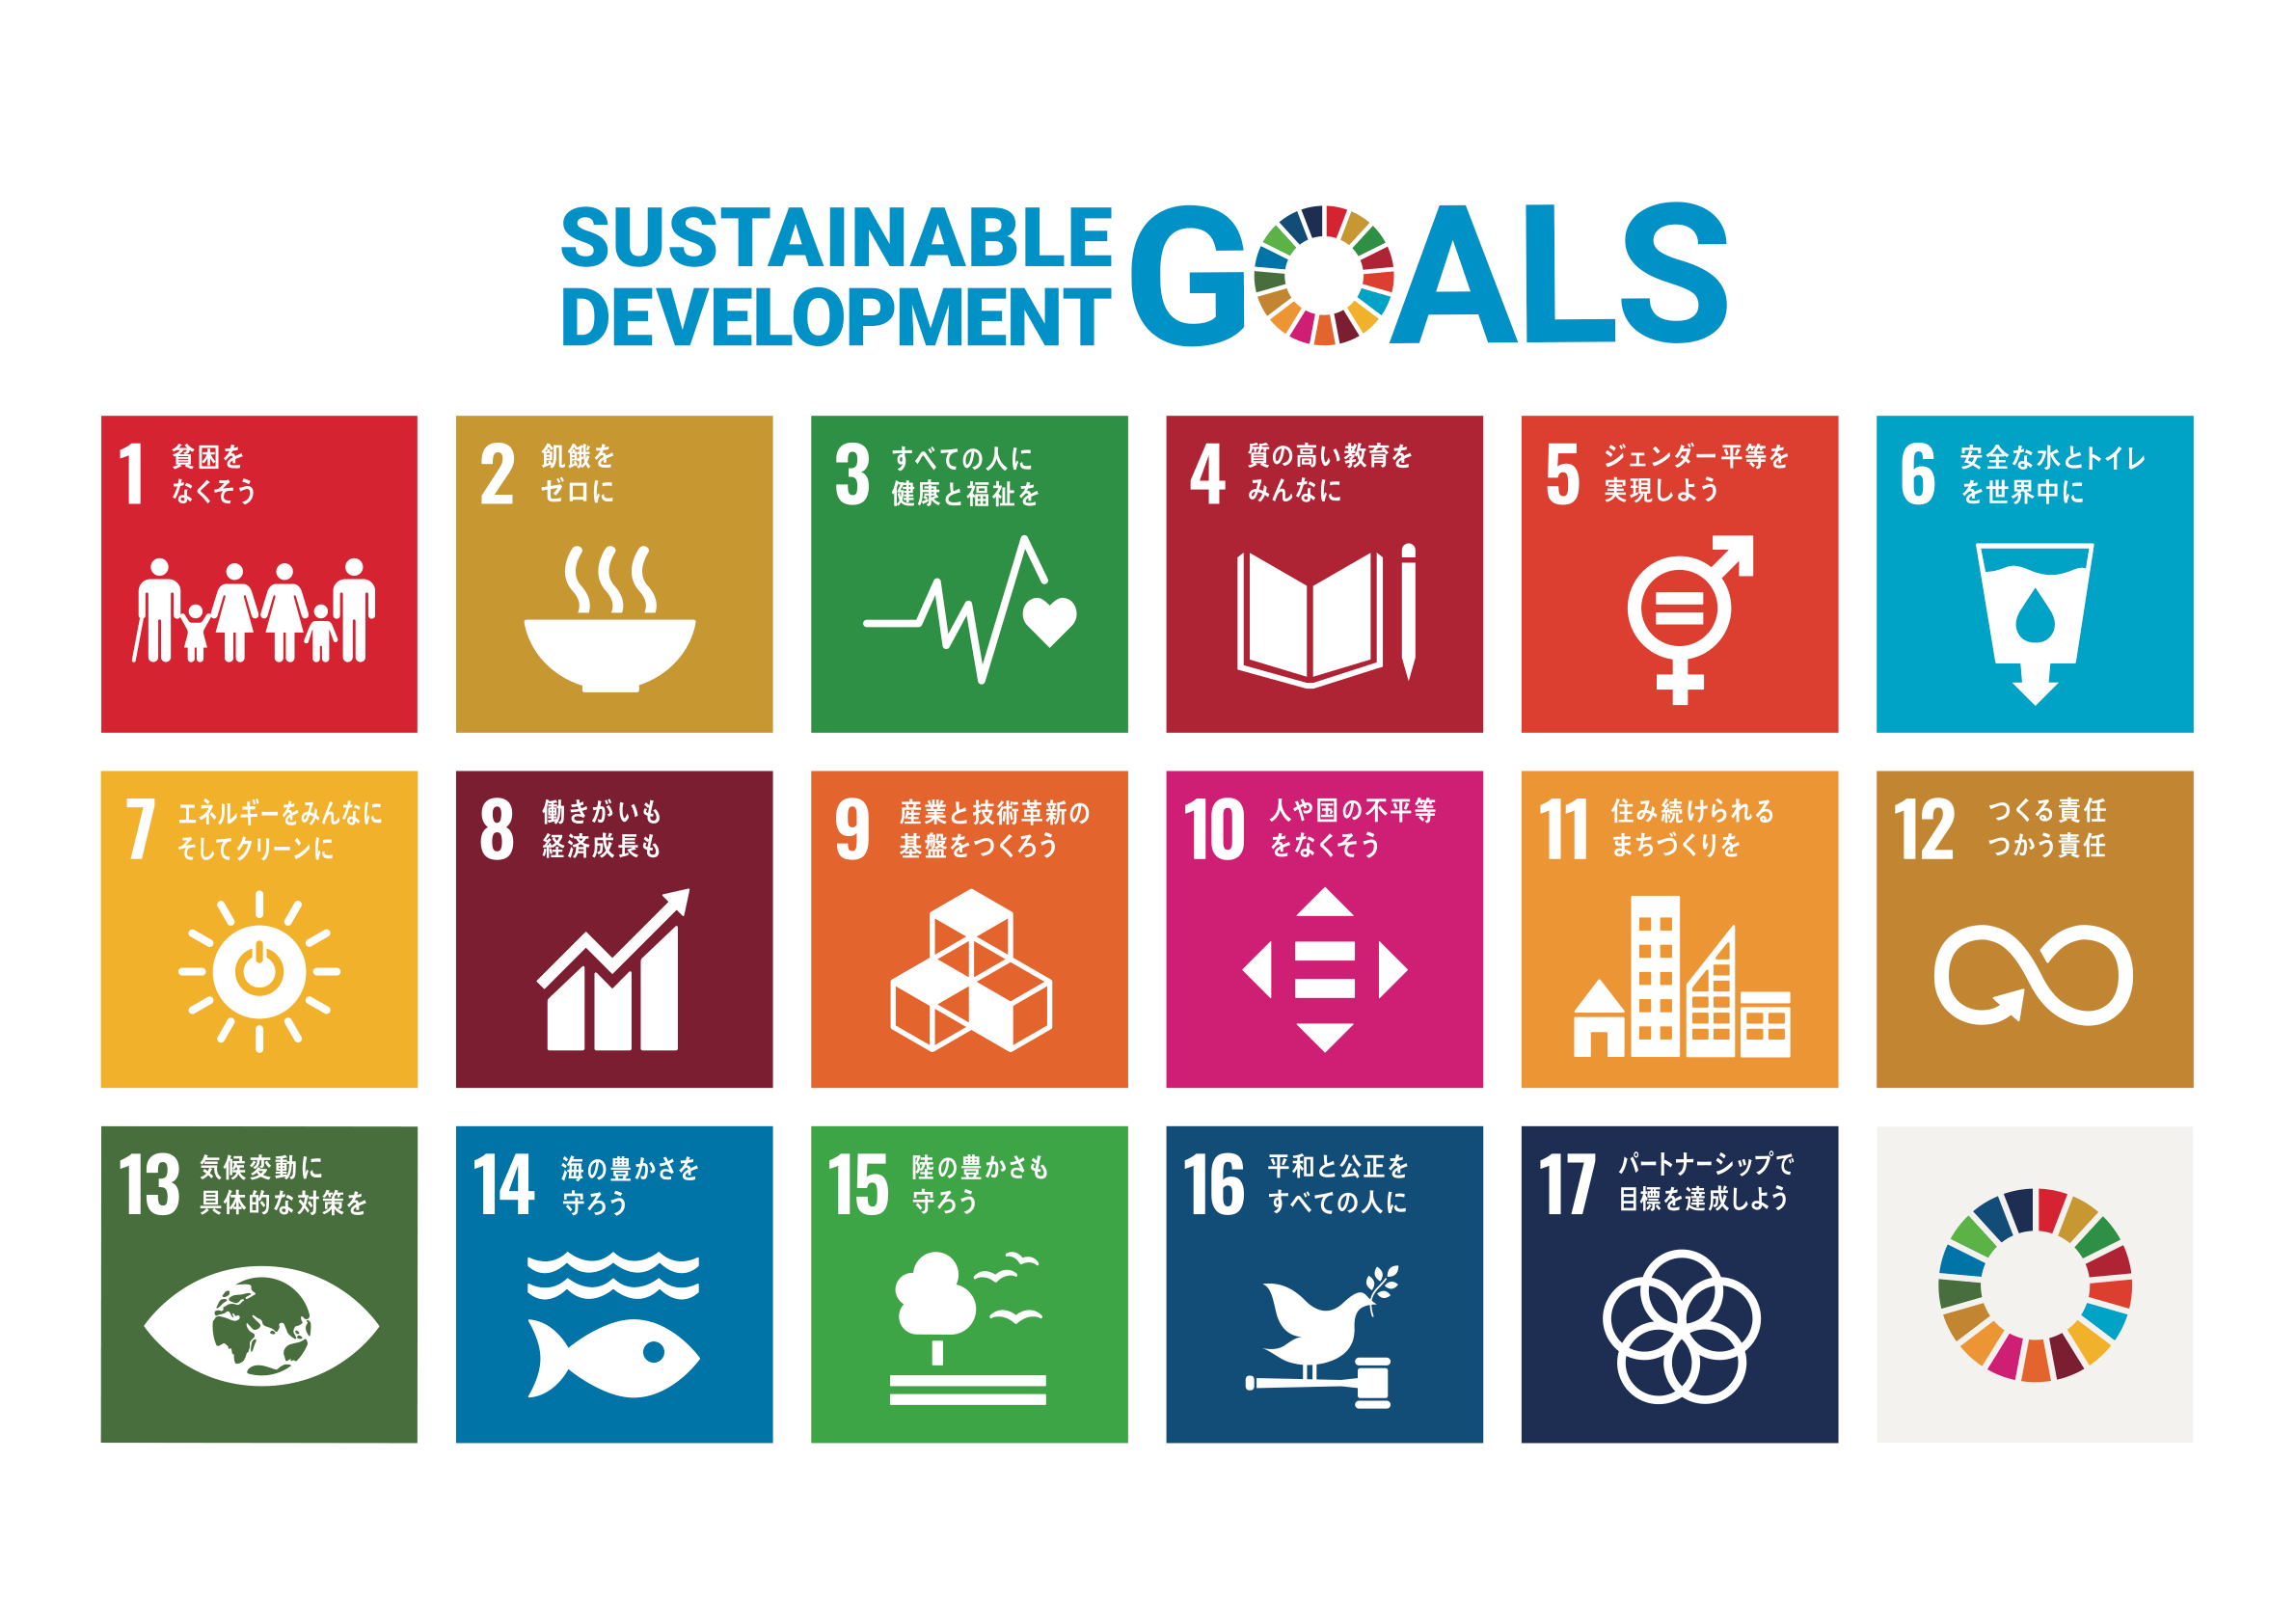 SDGs17の目標。1.貧困をなくそう。2.飢餓をゼロに。3.すべての人に健康と福祉を。4.質の高い教育をみんなに。5.ジェンダー平等を実現しよう。6.安全な水とトイレを世界中に。7.エネルギーをみんなに。そしてクリーンに。8.働きがいも経済成長も。9.産業と技術革新の基盤を作ろう。10.人や国の不平等をなくそう。11.住み続けられるまちづくりを。12.つくる責任、つかう責任。13.気候変動に具体的な対策を。14.海の豊かさを守ろう。15.陸の豊かさも守ろう。16.平和と公正をすべての人に。17.パートナーシップで目標を達成しよう。